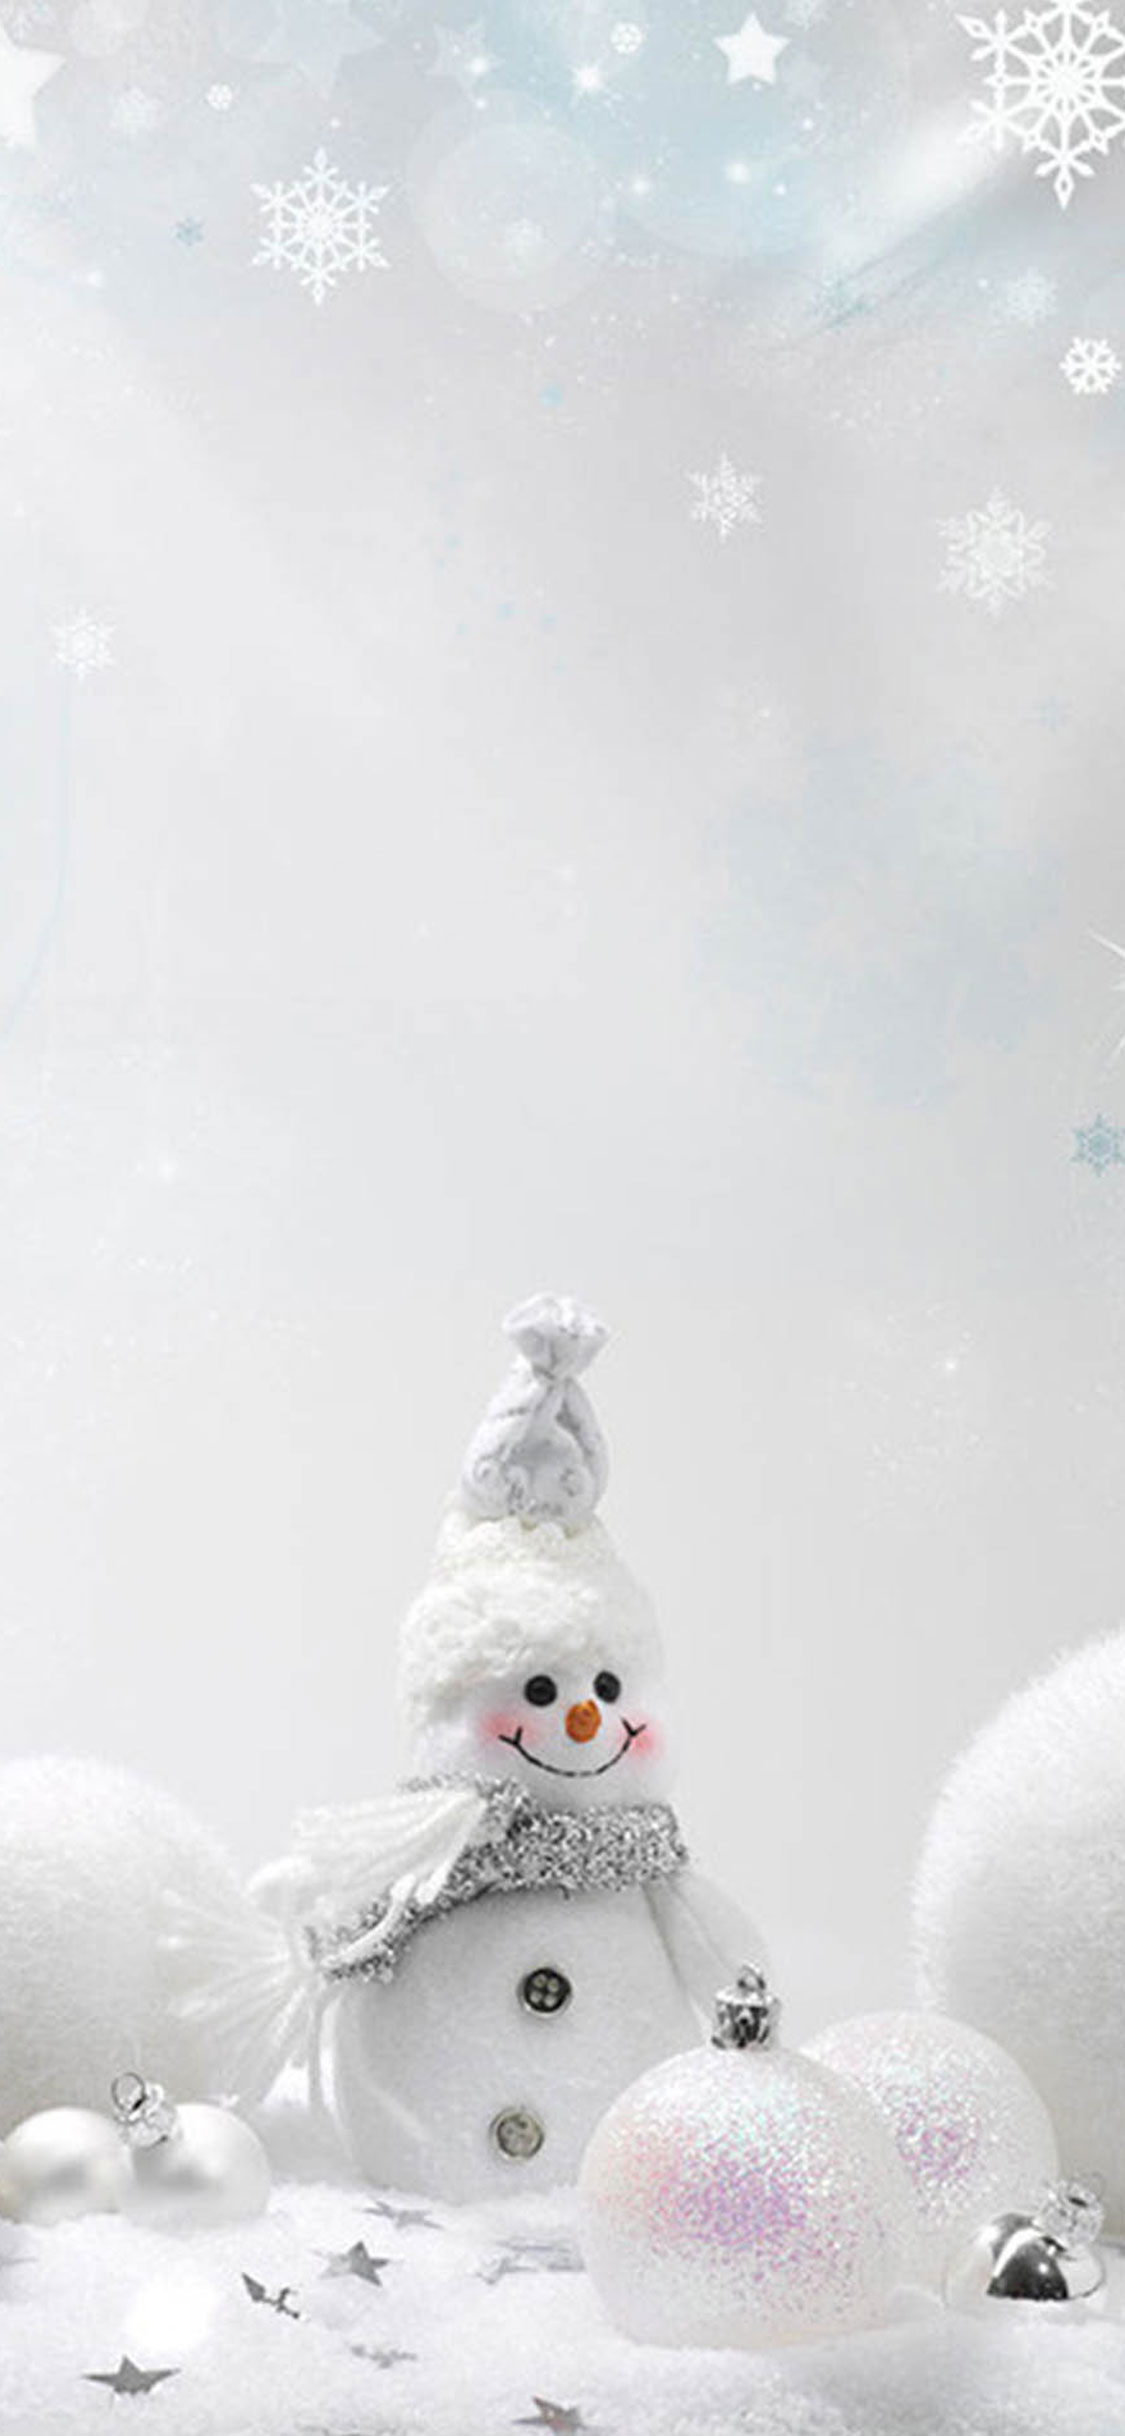 クリスマス雪だるまの壁紙,白い,雪だるま,雪,架空の人物,冬